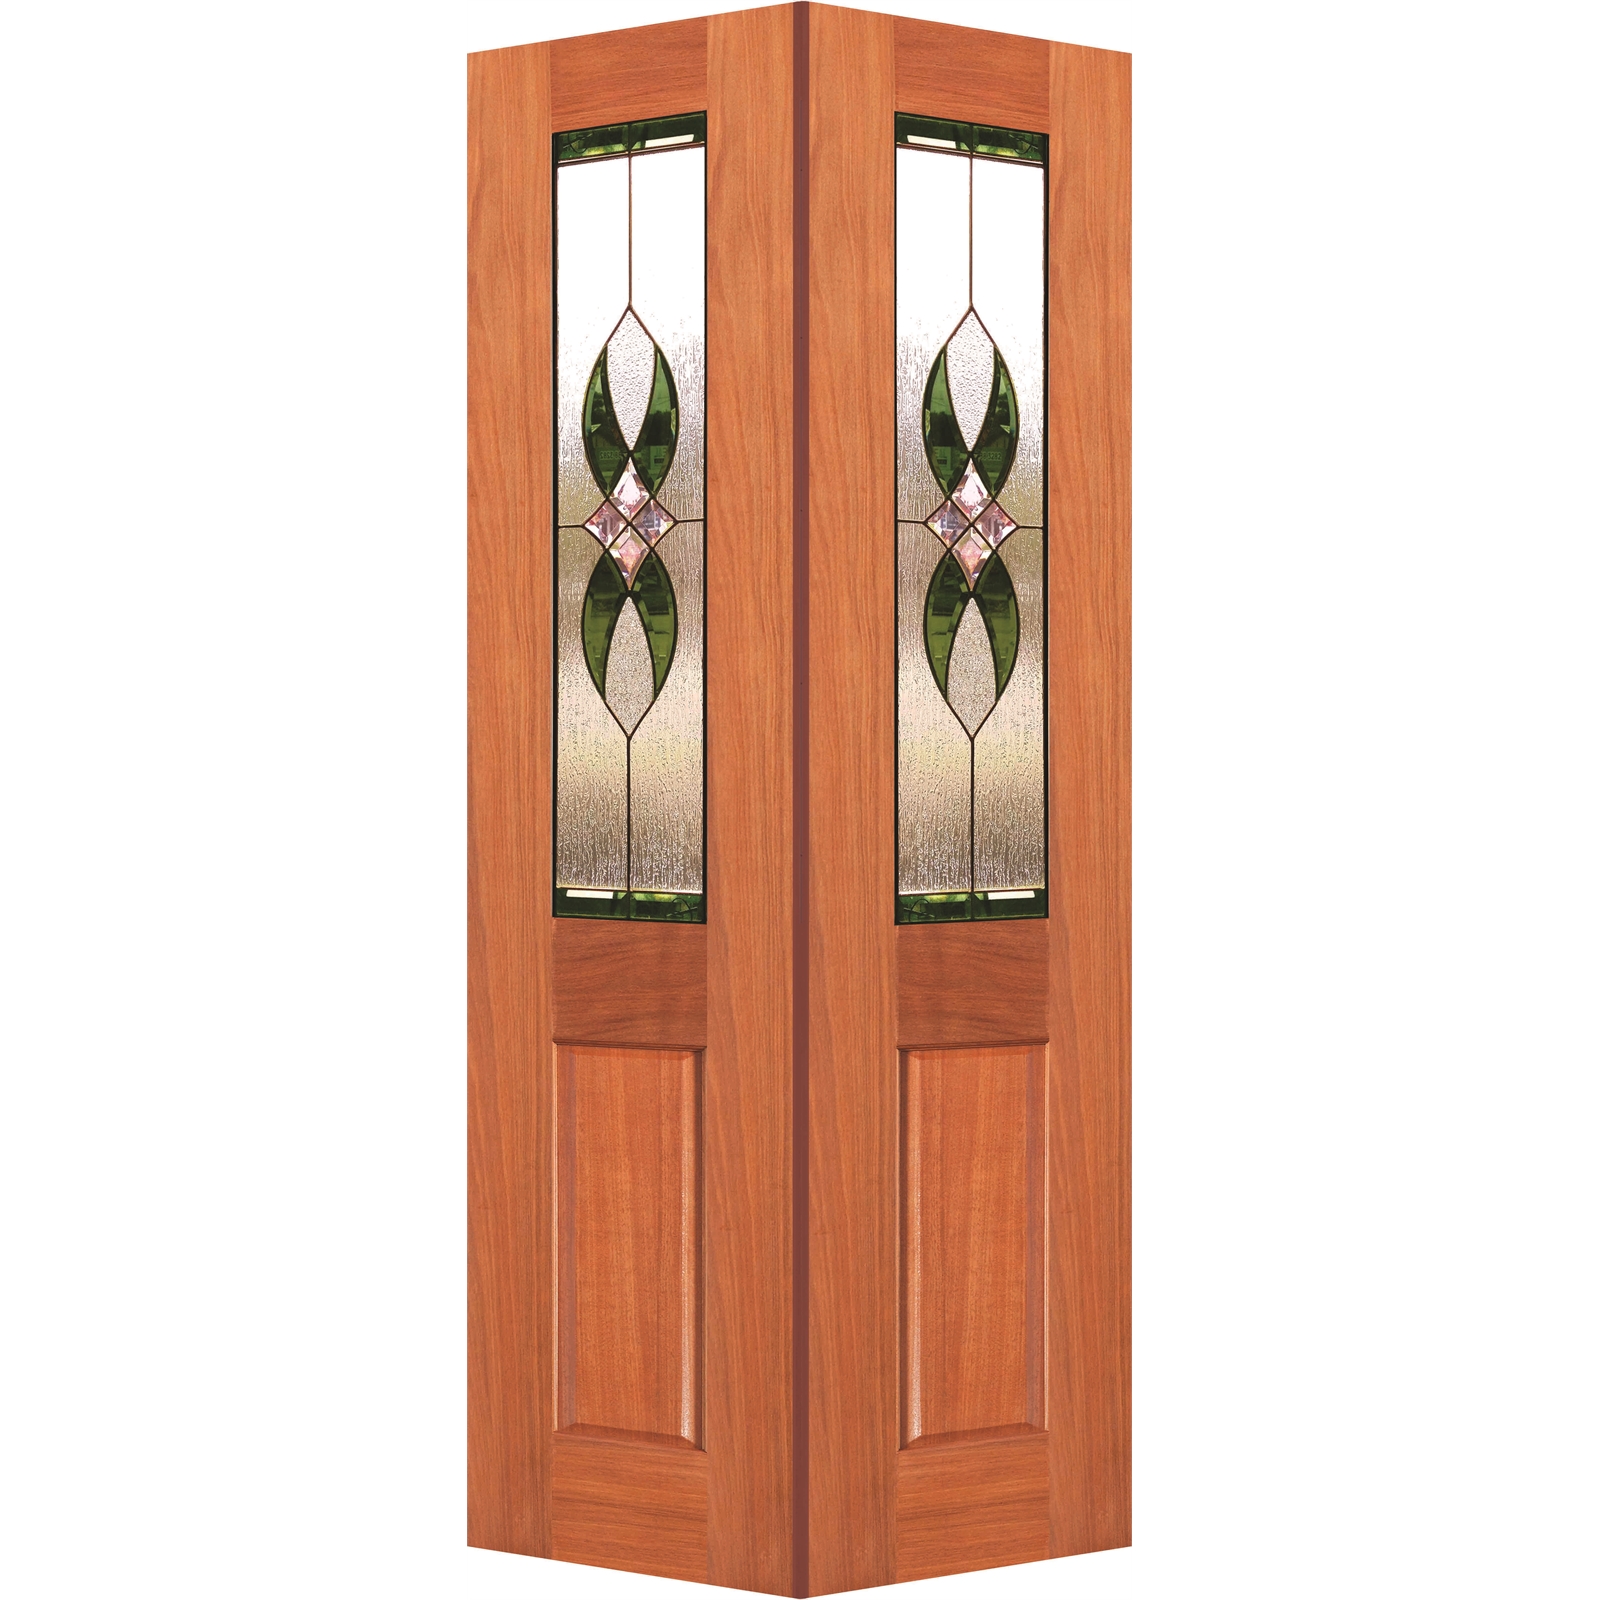 Woodcraft Doors 2040 x 820 x 35mm Cass Internal Bi-Fold Door